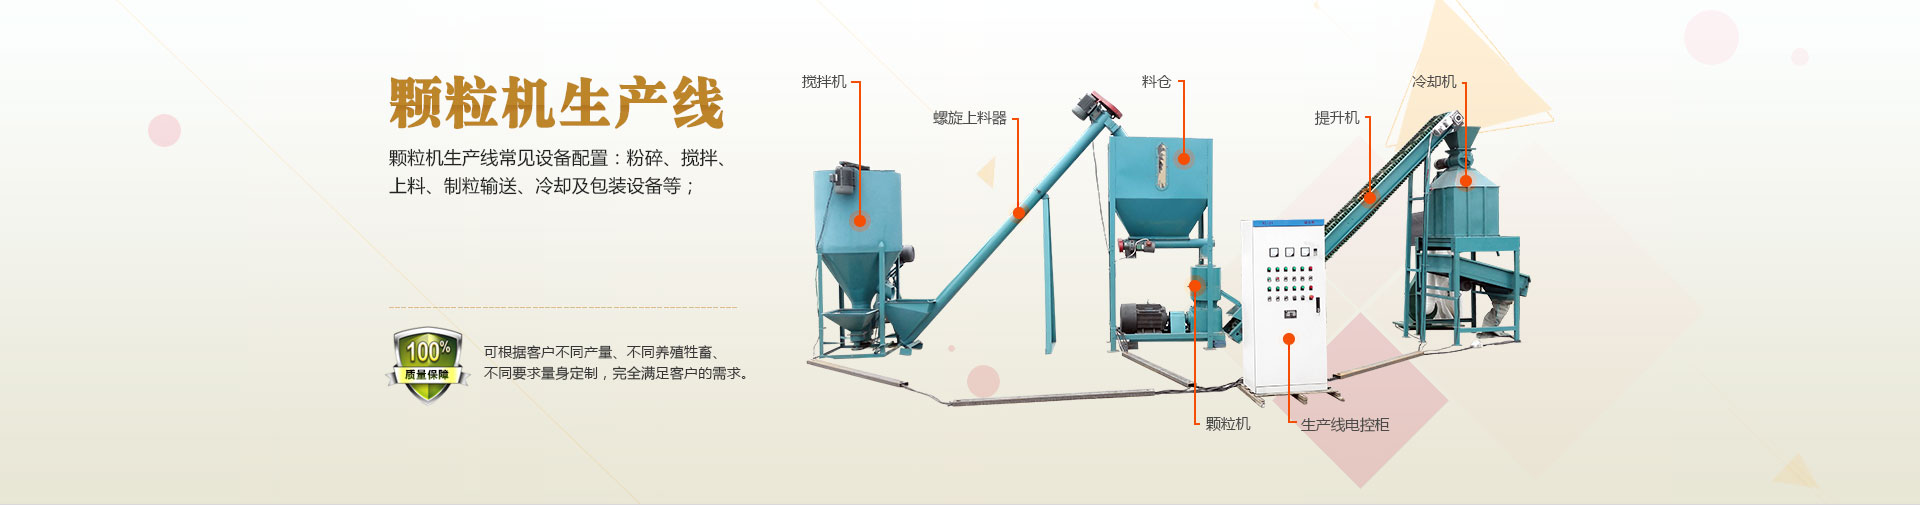 飼料顆粒機成套設備,提供粉碎,上料,攪拌,制粒,顆粒包裝完整的生產(chǎn)線(xiàn)方案